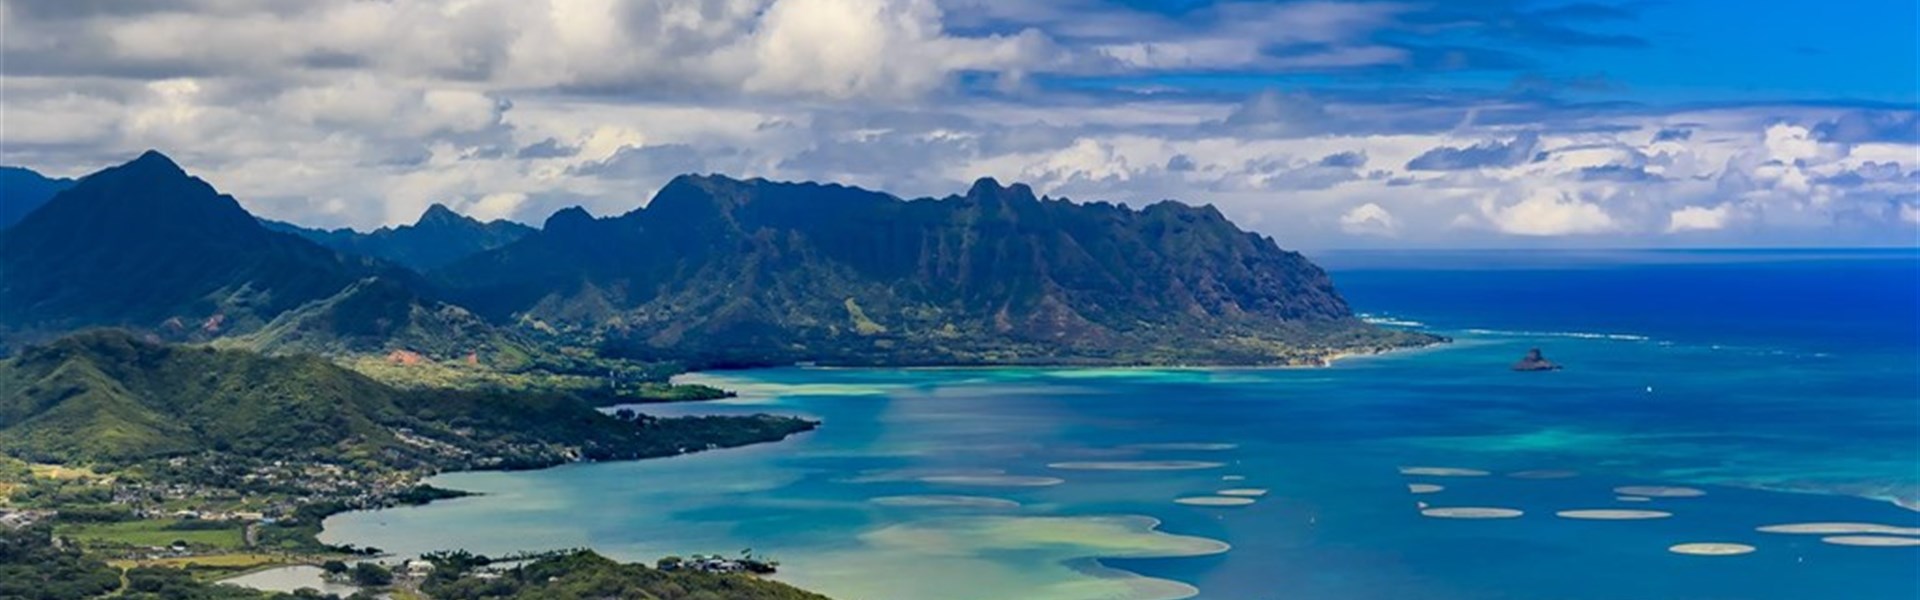 Havajské ostrovy za přírodou, odpočinkem i poznáním - 